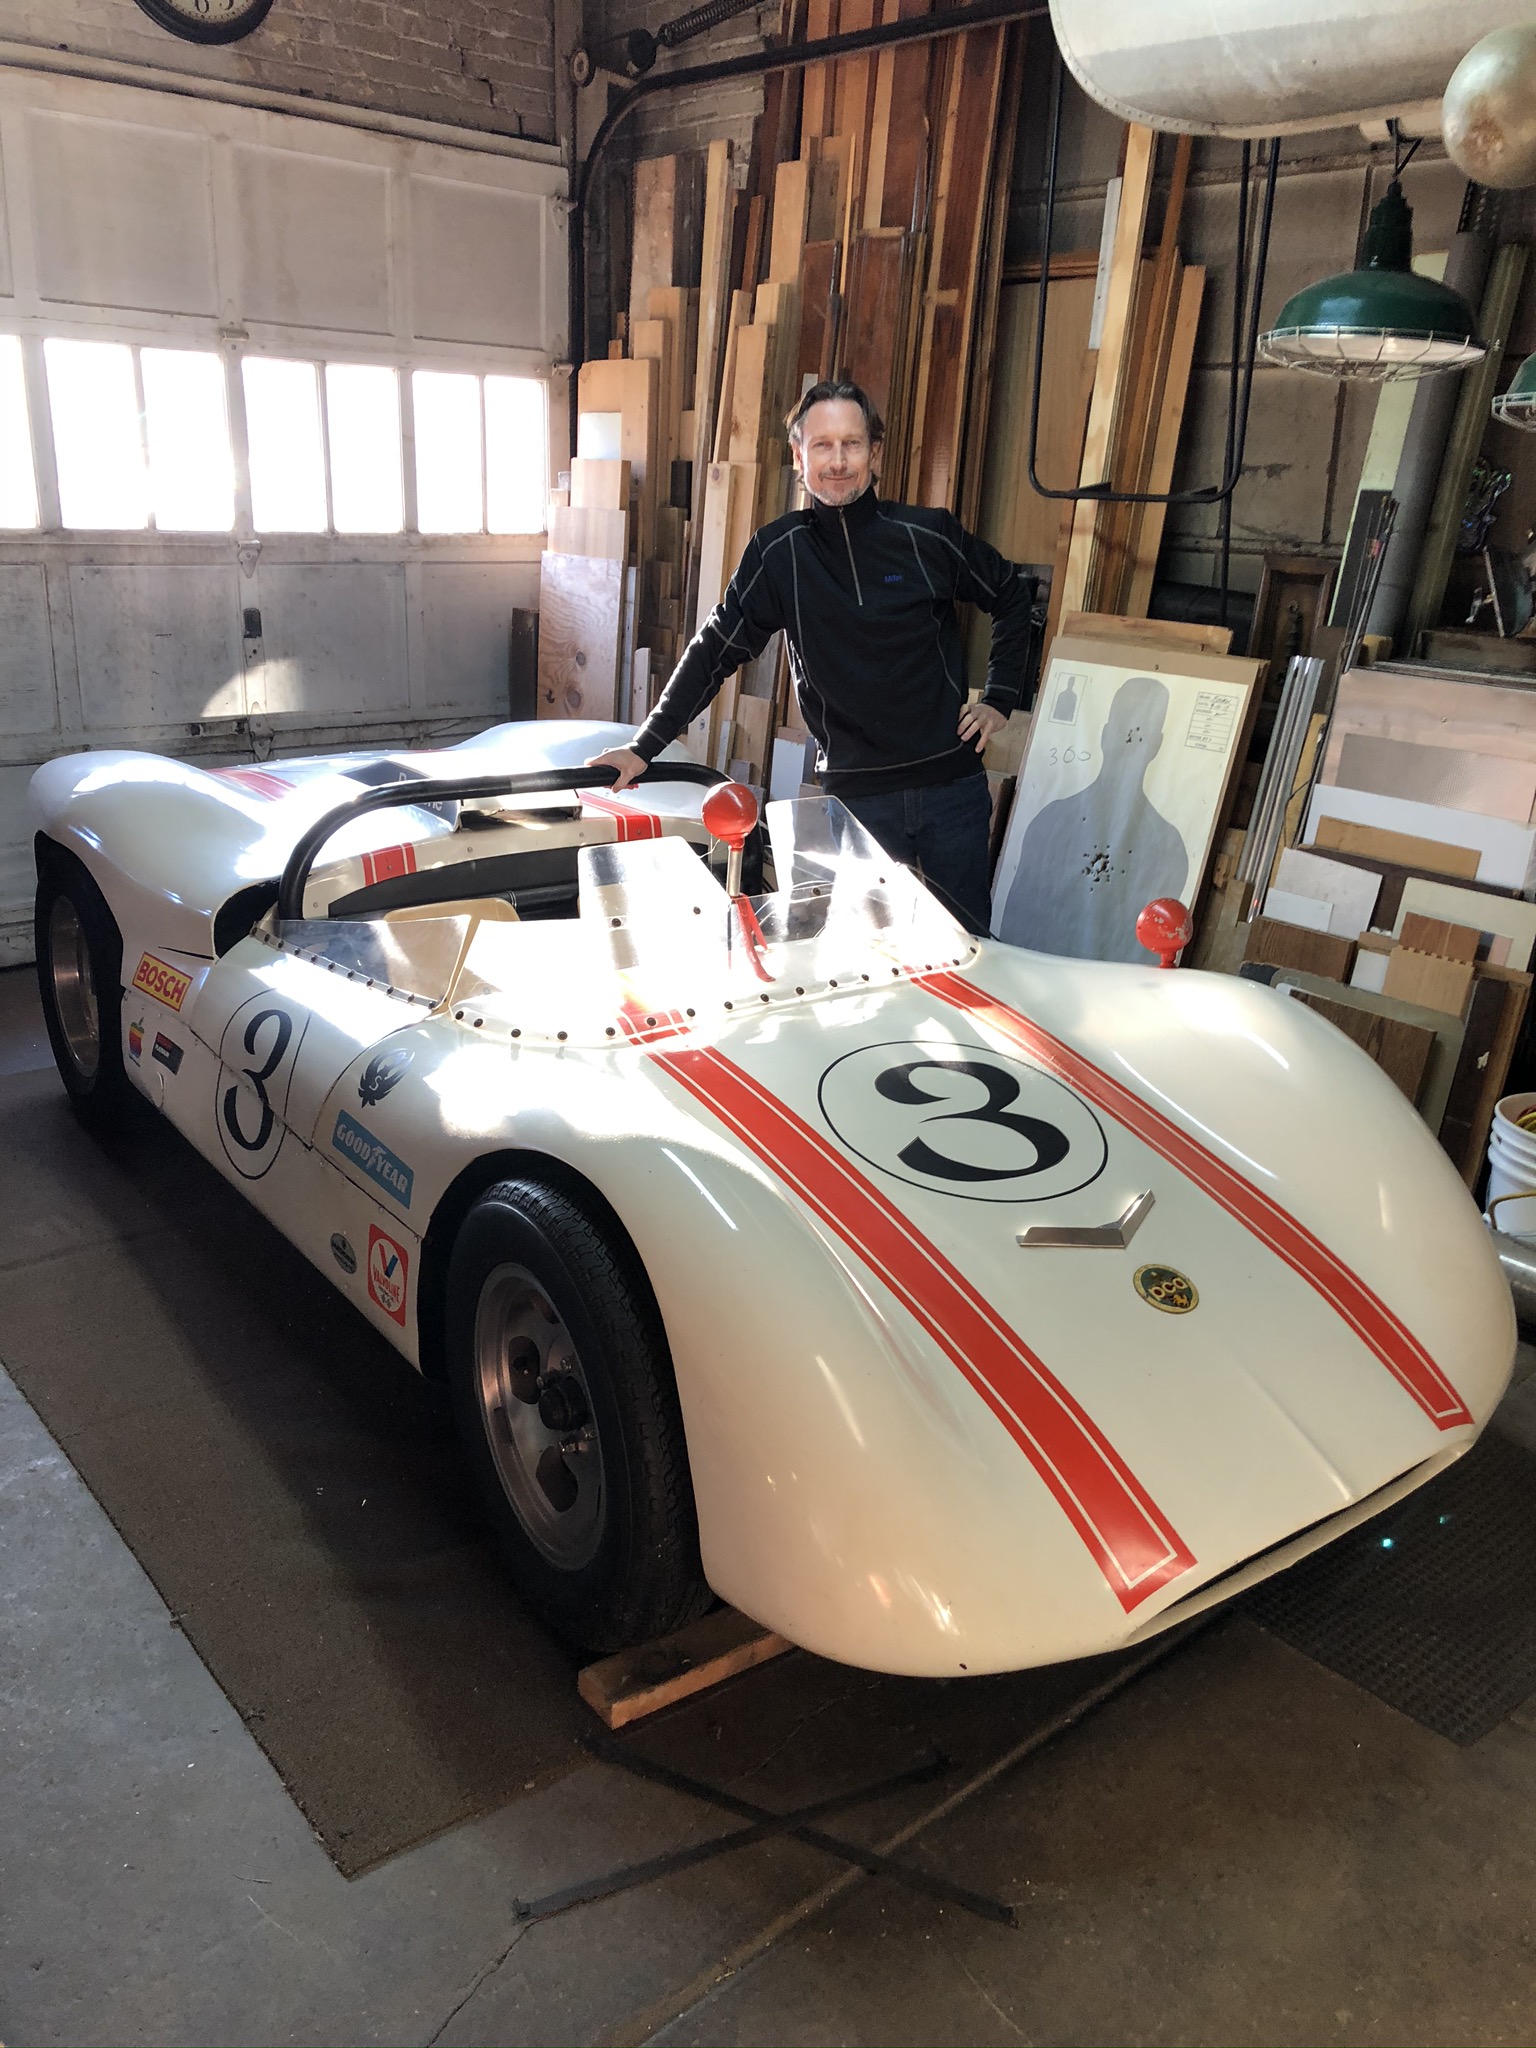 Allan Sturm posting with his favorite 1960's racecar